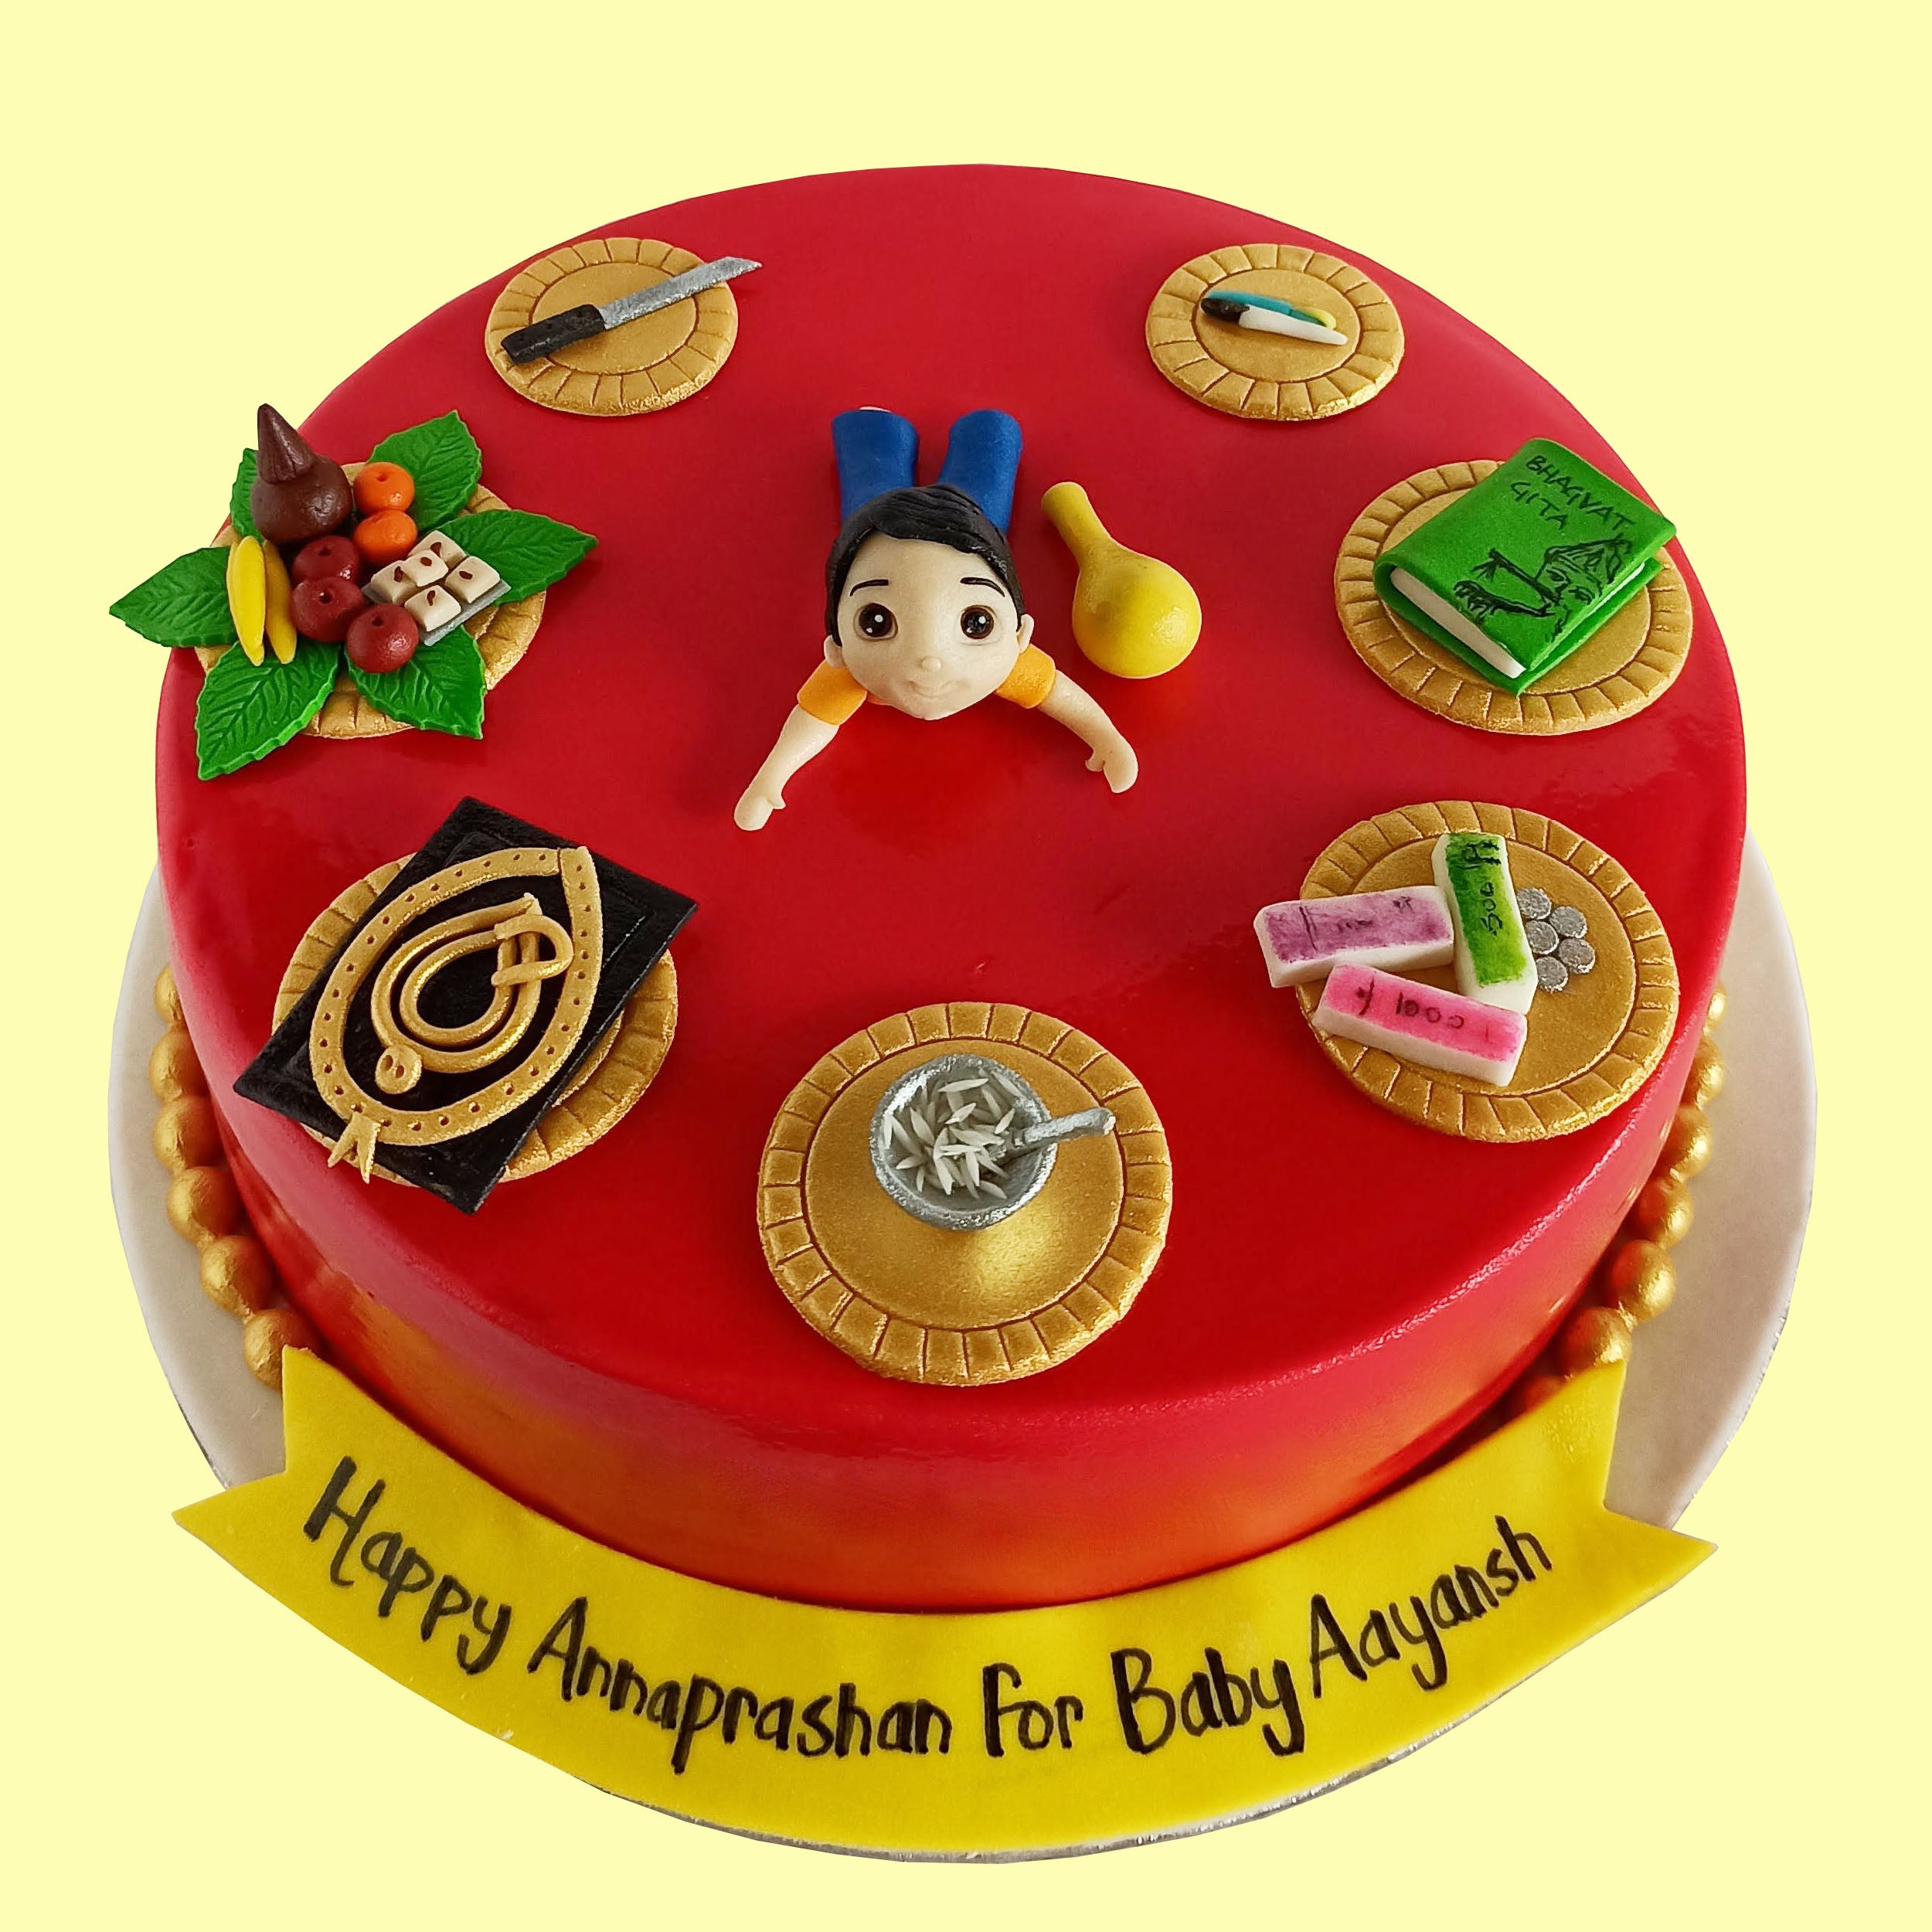 Bake 'N' Bite - Annaprashan theme cake | Facebook